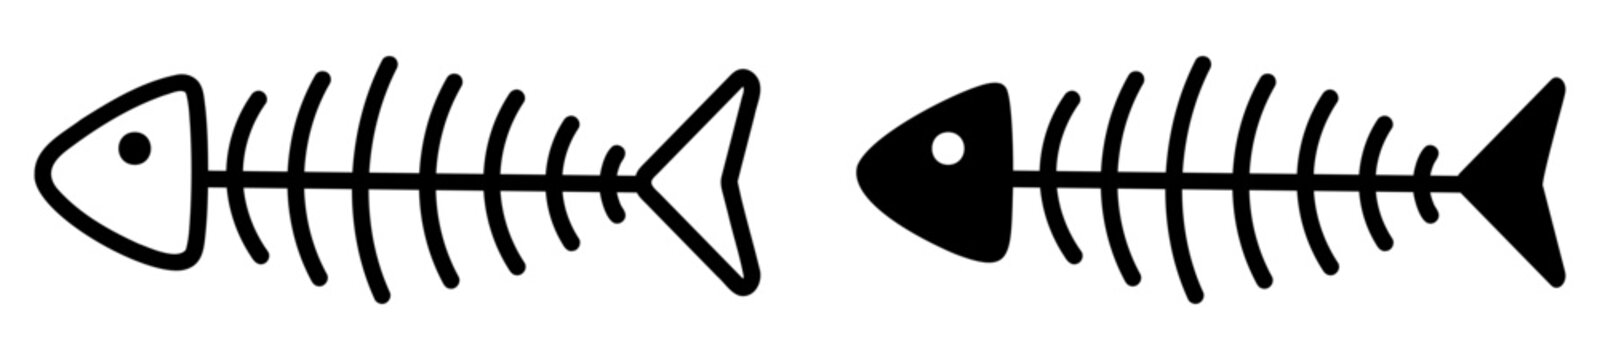 Fish bone icons. Vector illustration isolated on white background